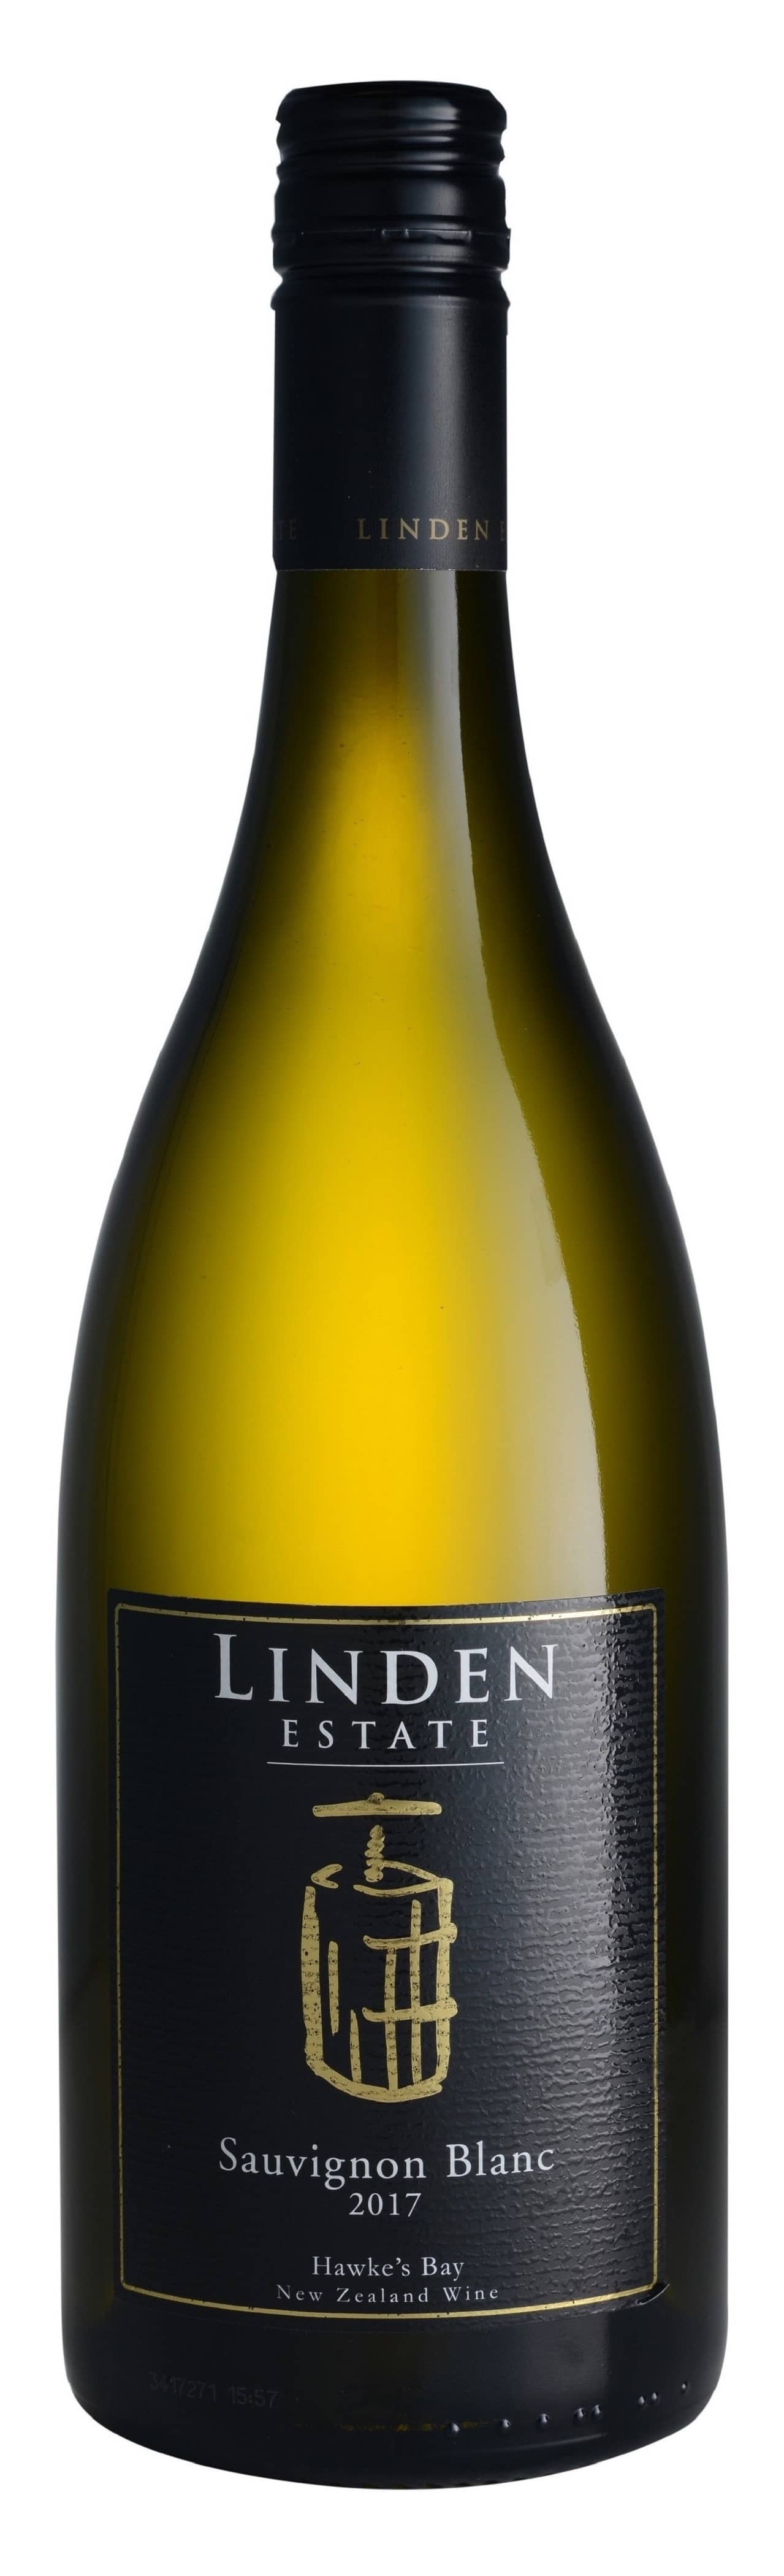 Linden 2017 Sauvignon Blanc